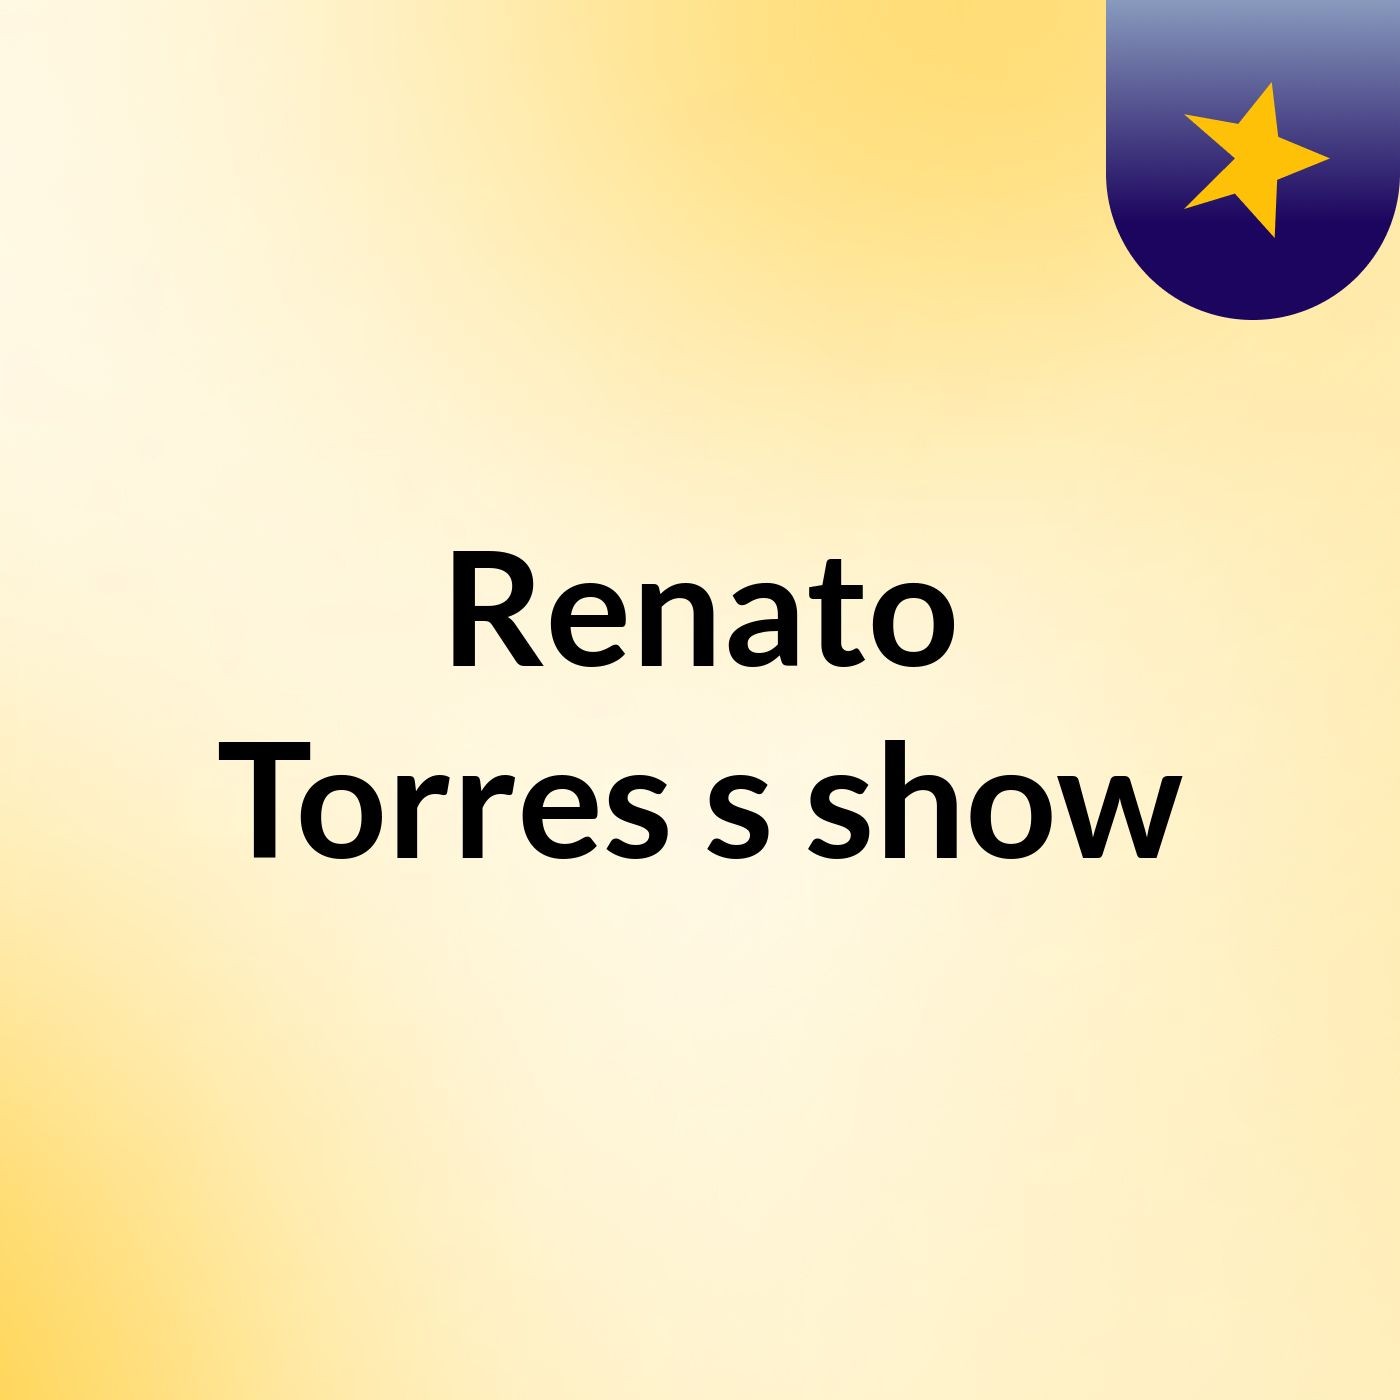 Renato Torres's show